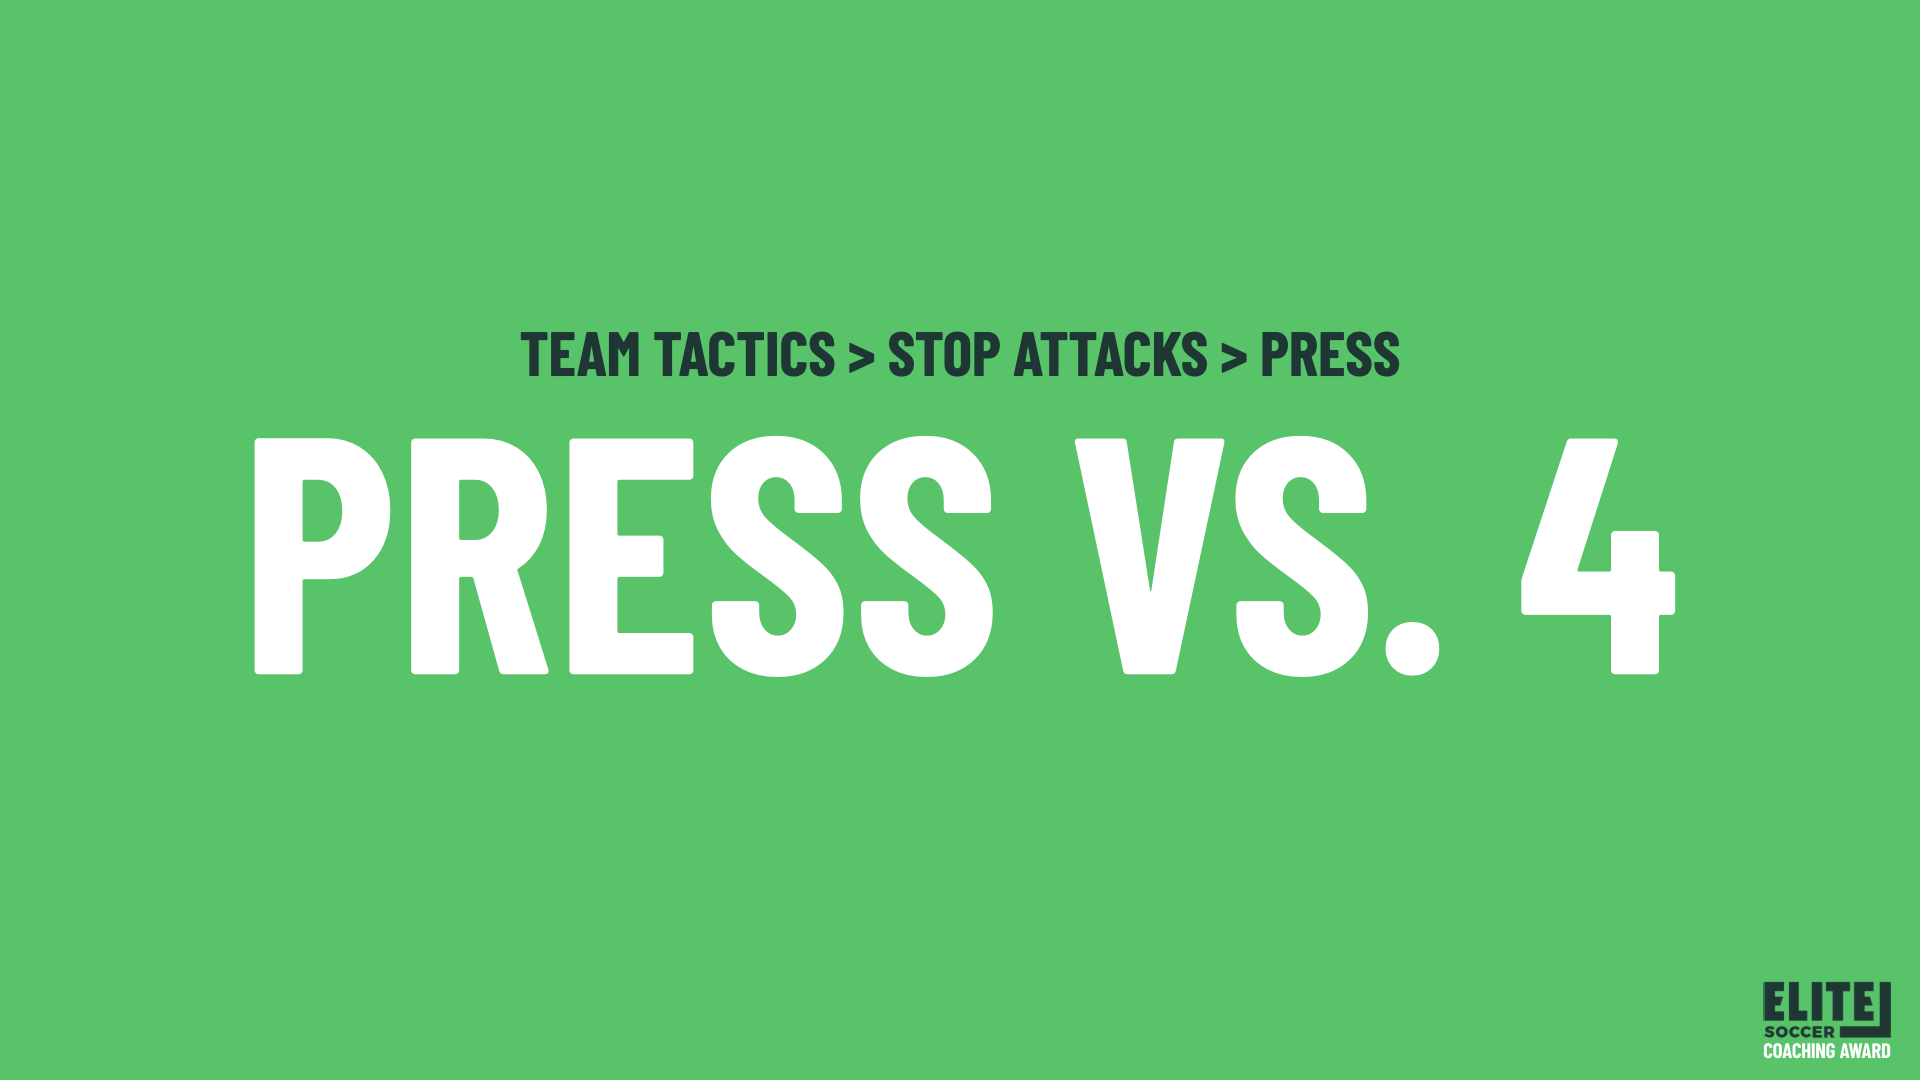 Press vs 4